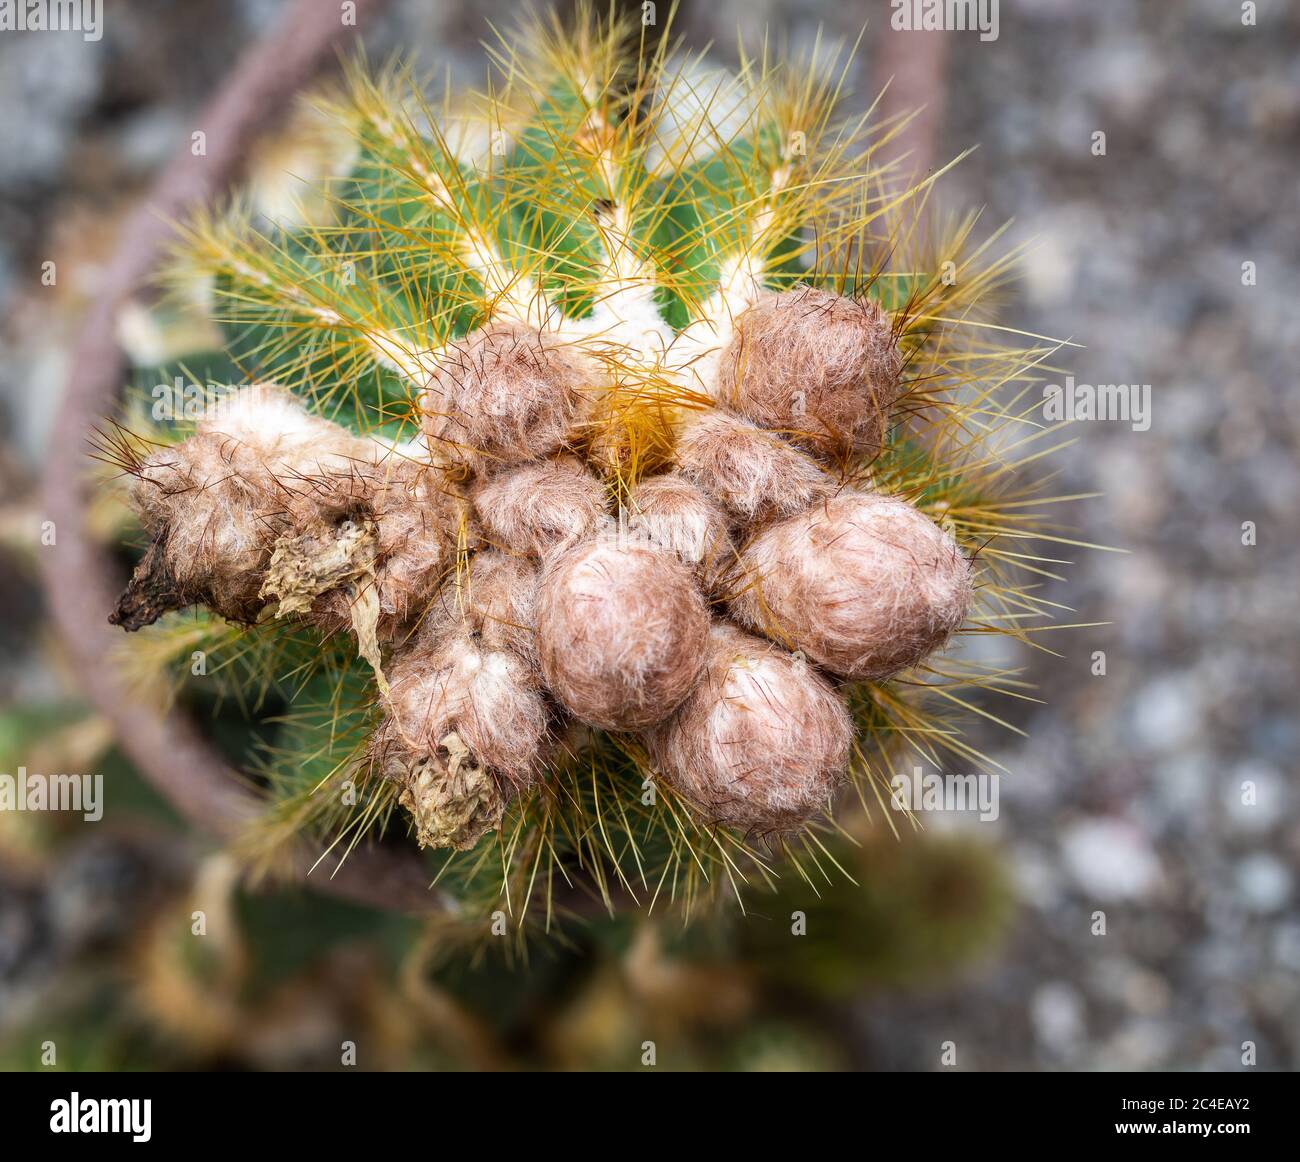 Gros plan du cactus à l'aigle et laineux Eriocephala Magnifica, une plante indigène de la famille des cactaceae d'Amérique du Sud Banque D'Images